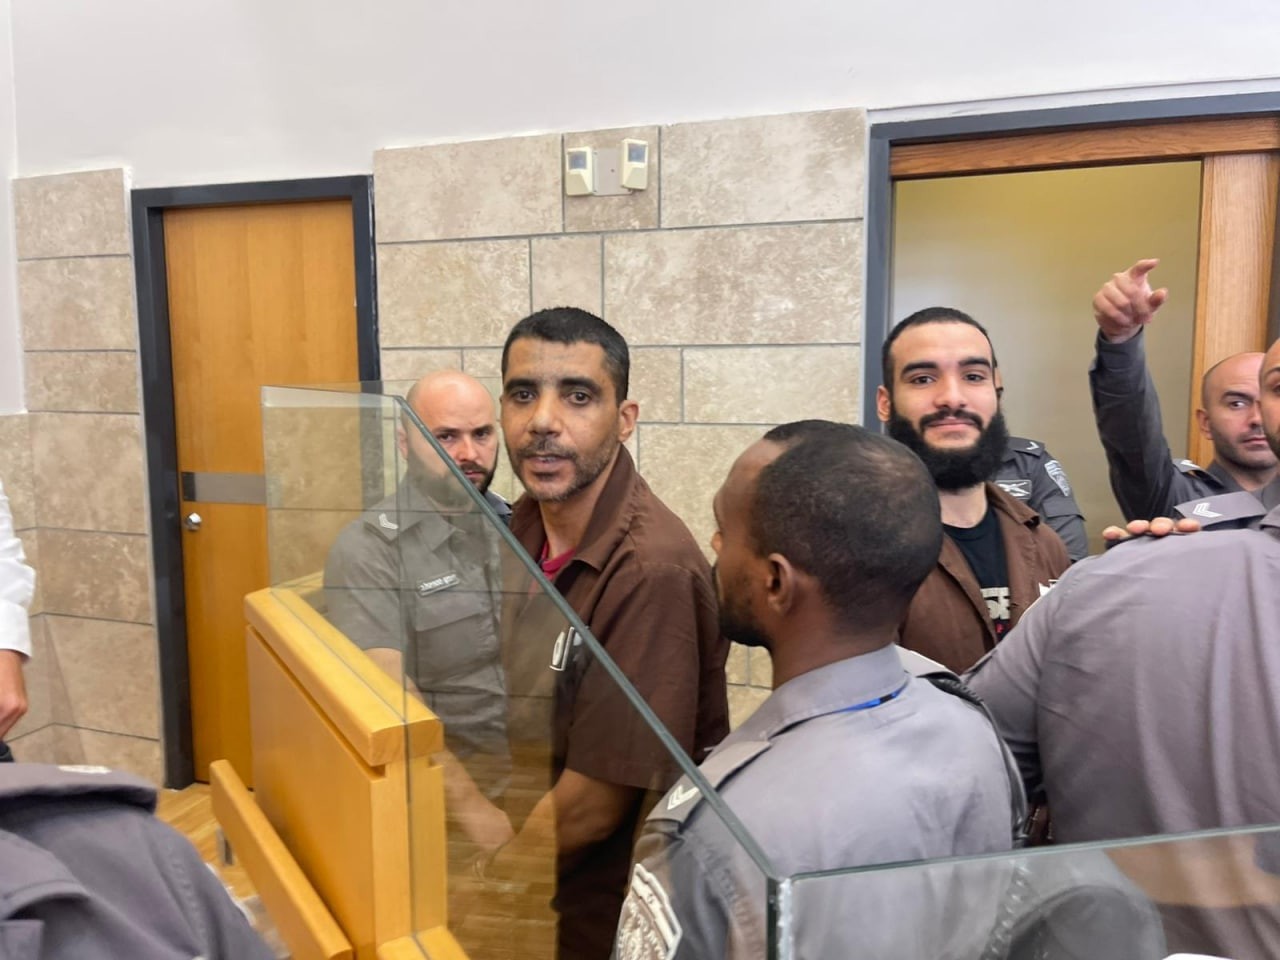 أسرى نفق الحرية من داخل قاعة المحكمة في الناصرة.jpg